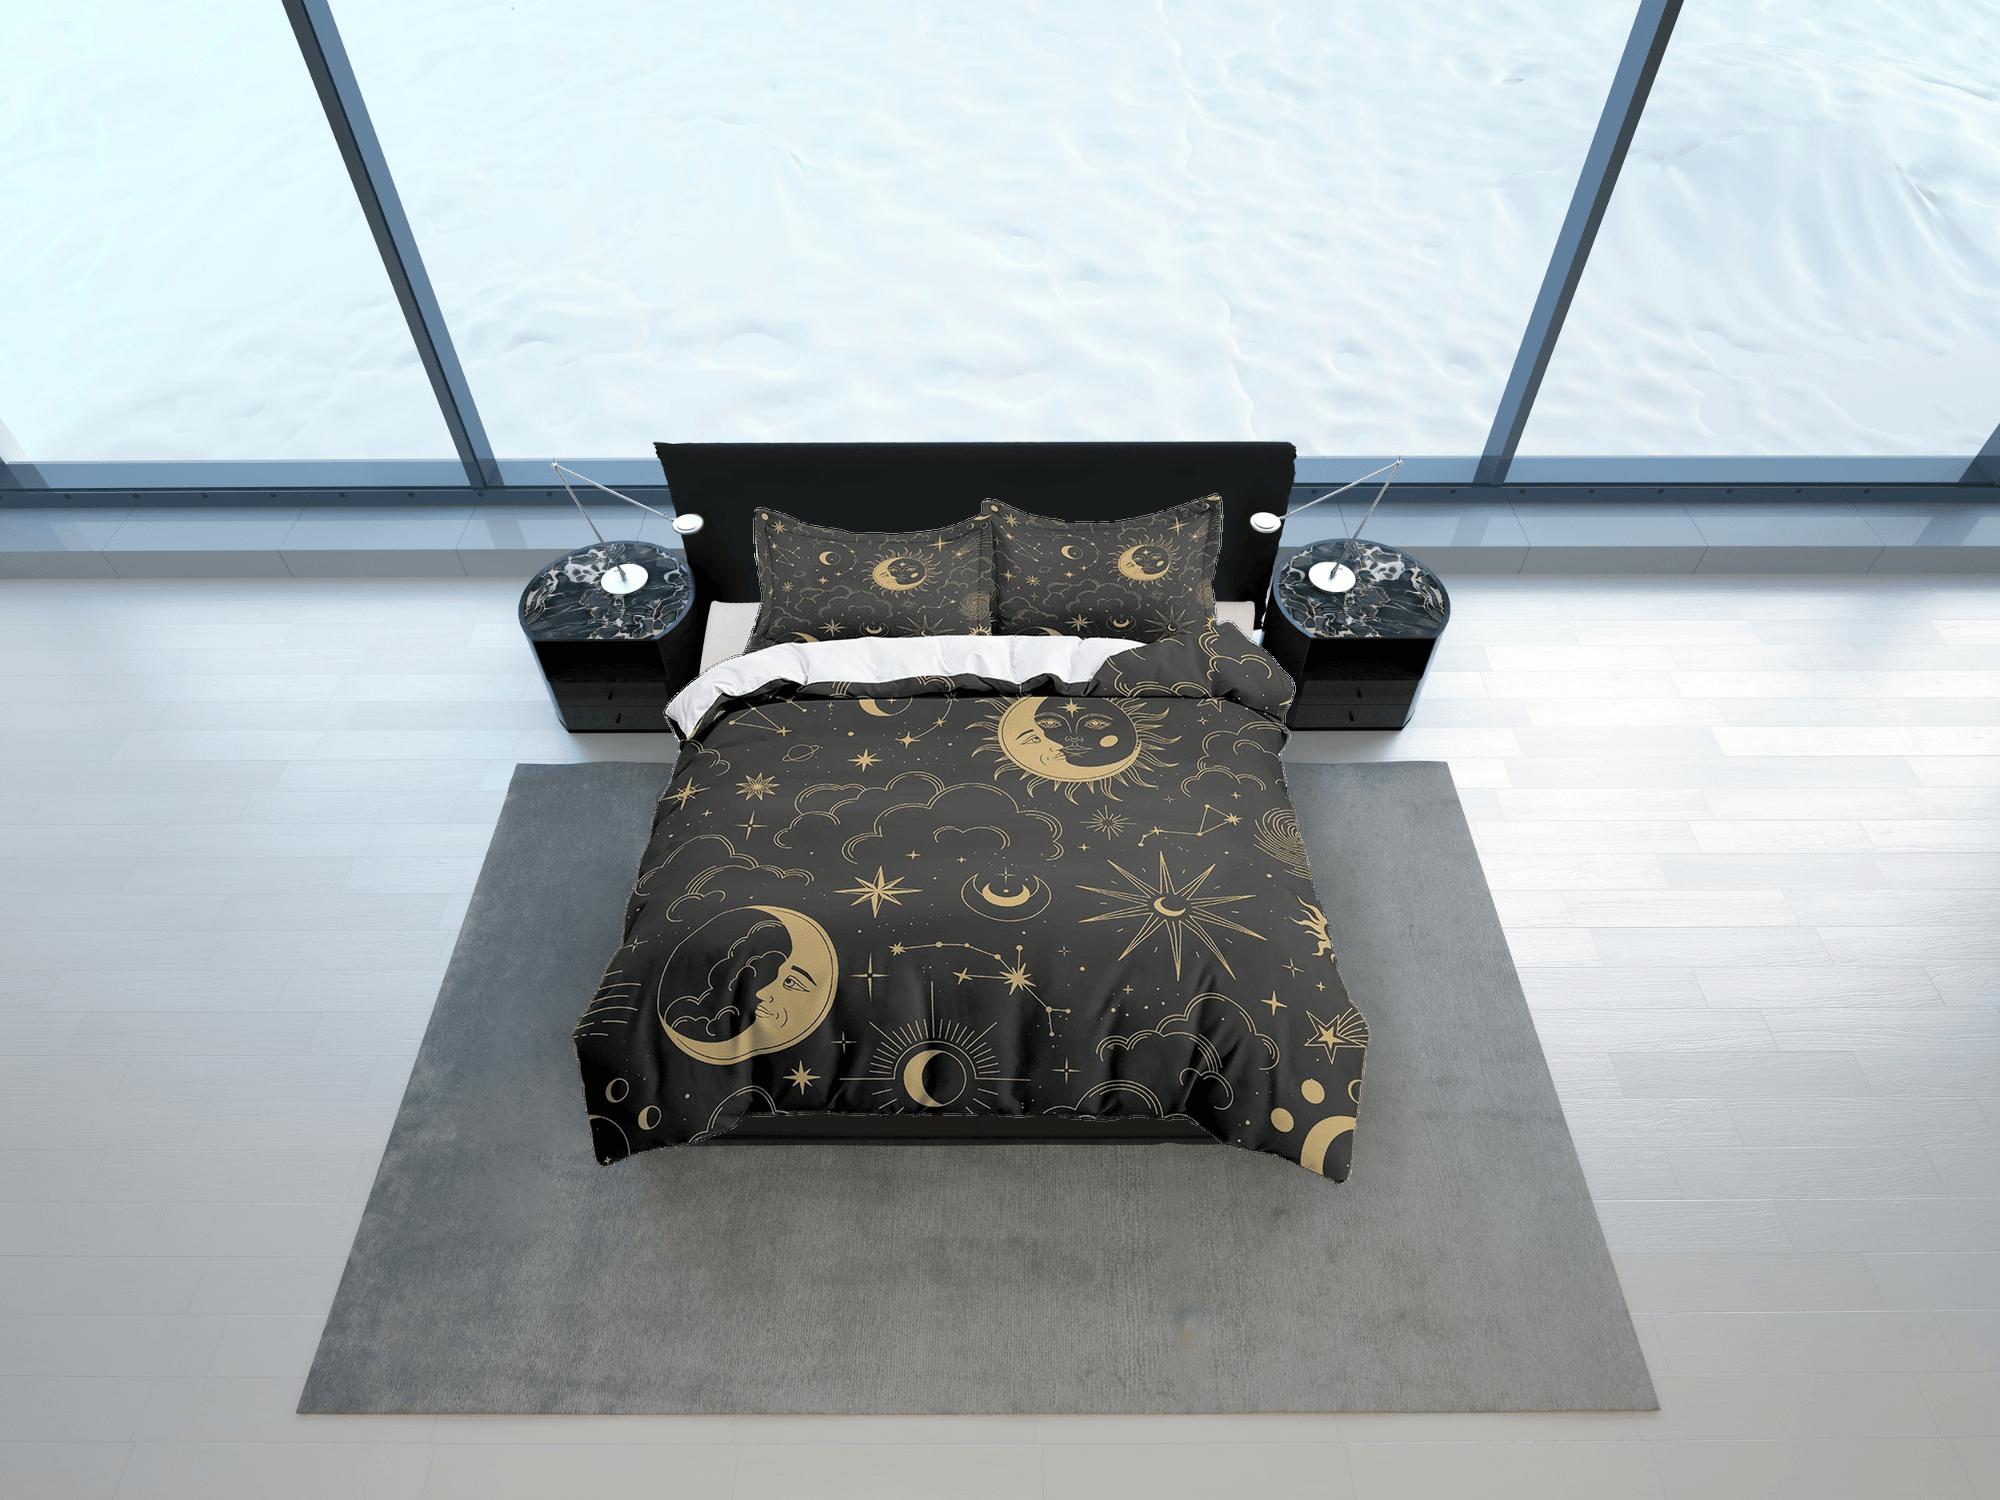 daintyduvet Celestial black crescent moon bedding bronze witchy decor dorm bedding, aesthetic duvet, boho bedding full king queen, astrology gift gothic